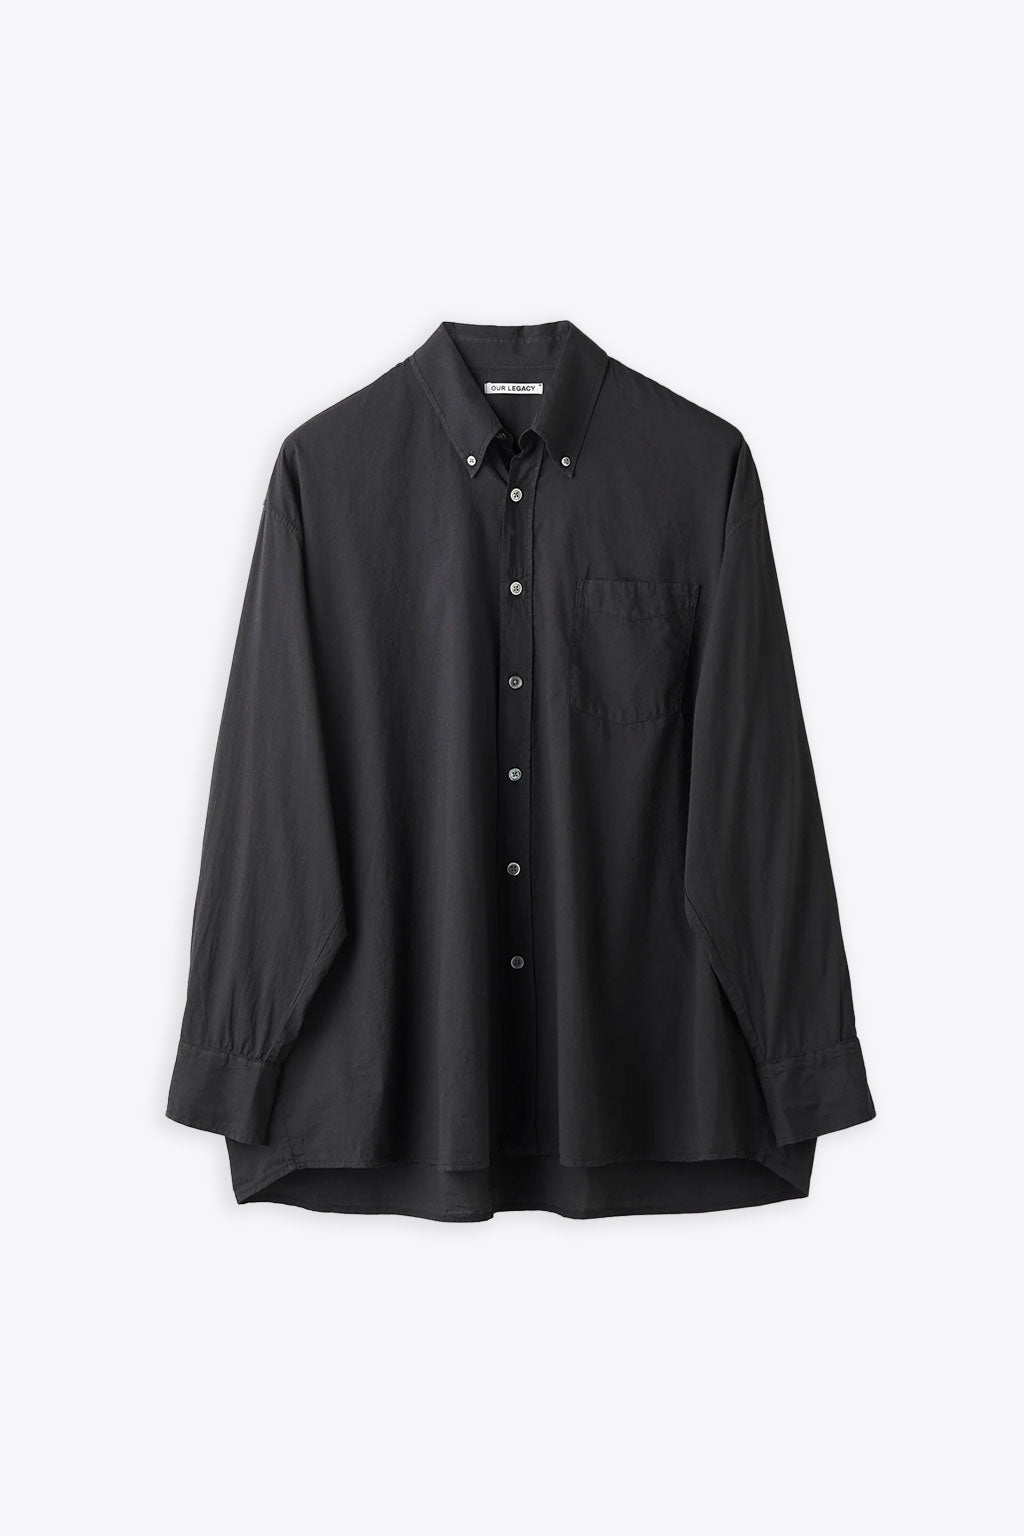 alt-image__Black-cotton-voile-button-down-shirt---Borrowed-BD-shirt